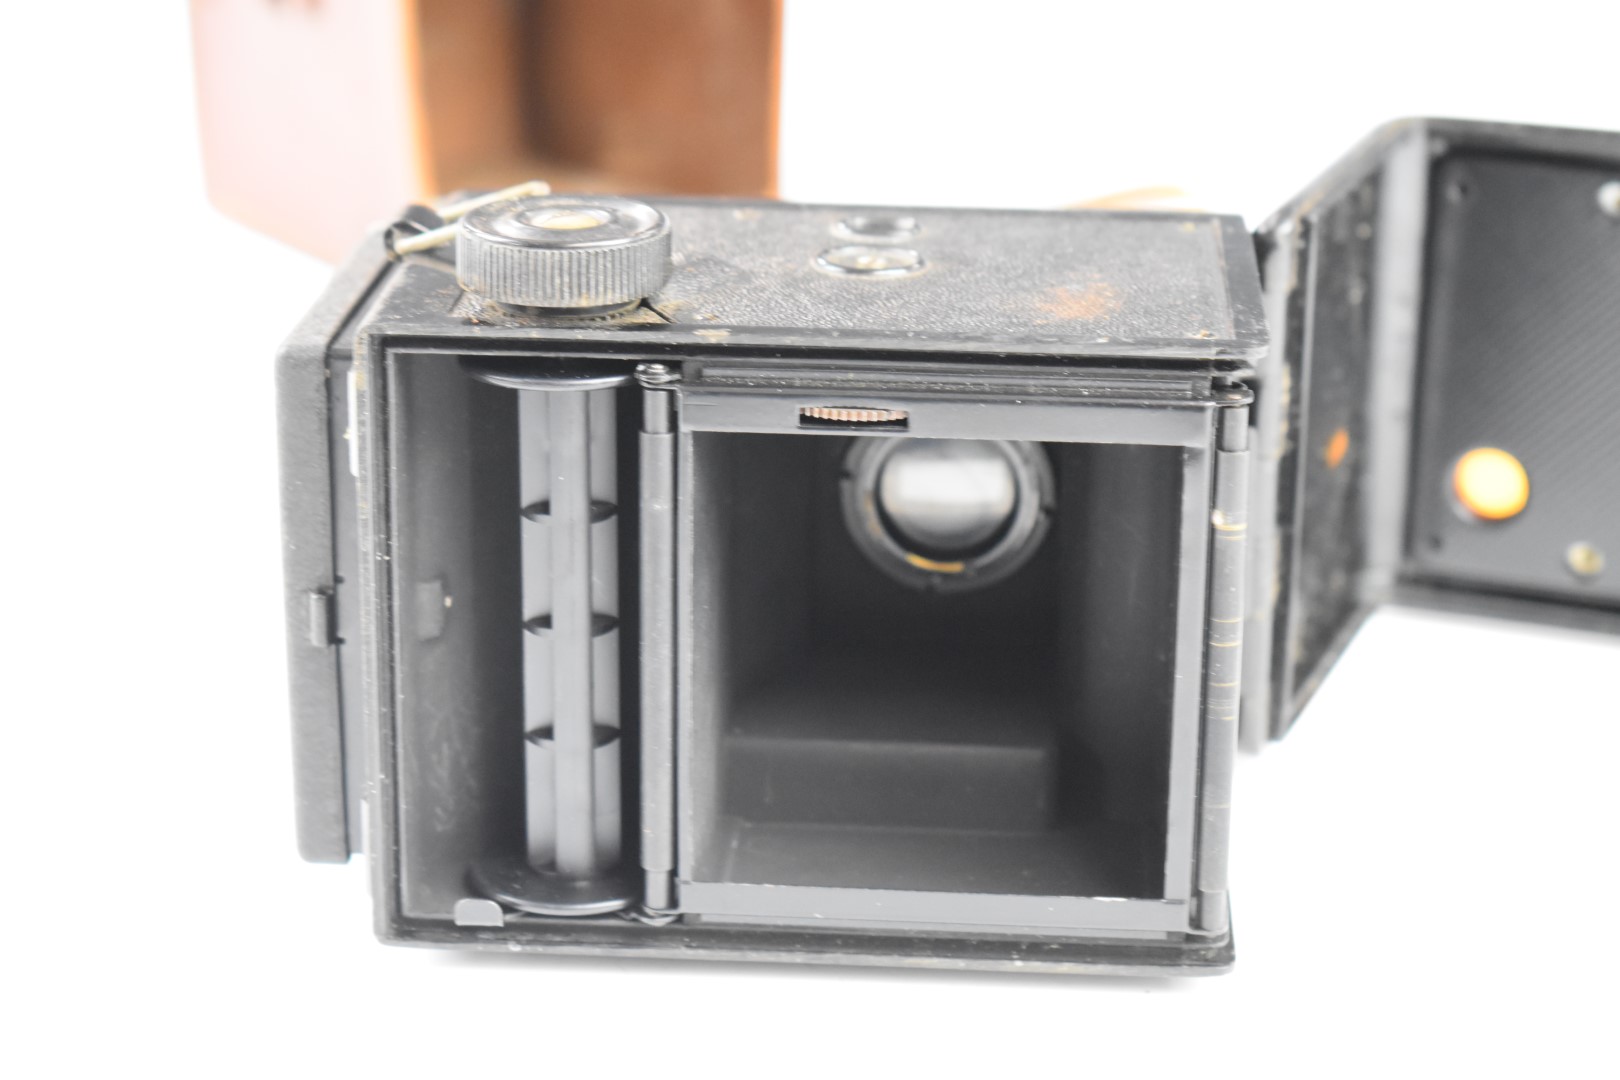 Voigtlander Brilliant TLR camera in original leather case - Image 8 of 8